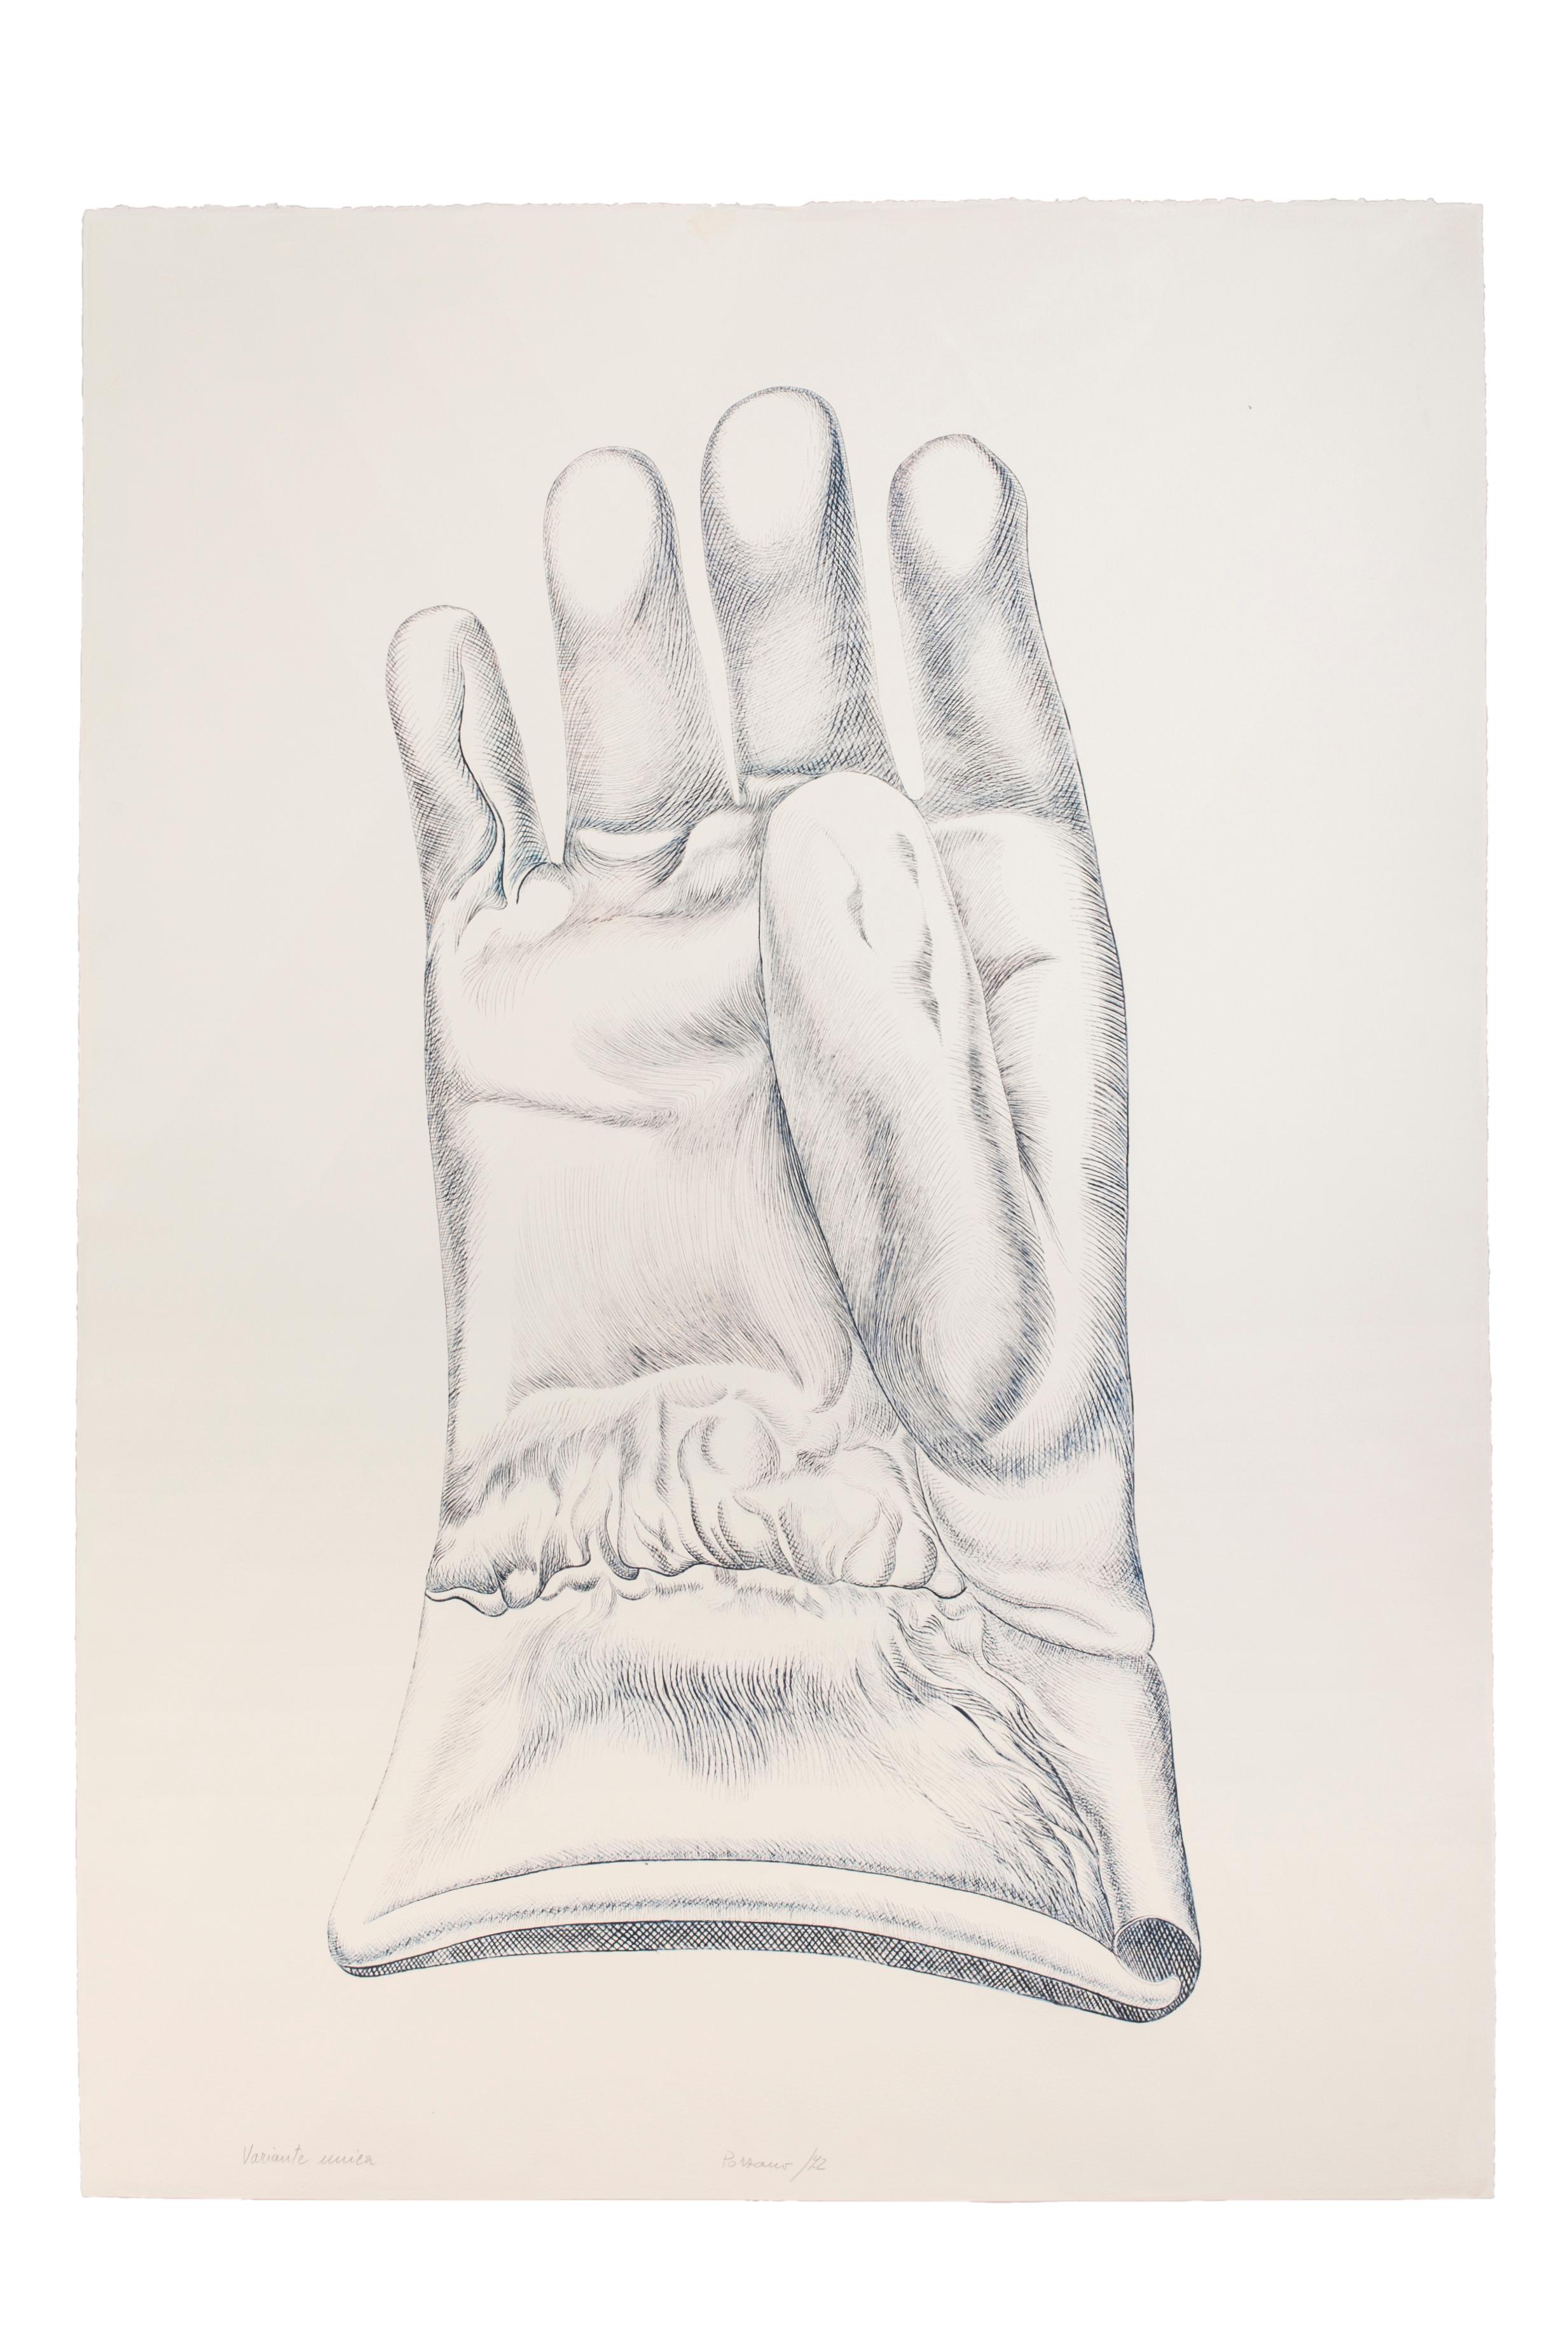 Blue Glove - Original Etching by Giacomo Porzano - 1972